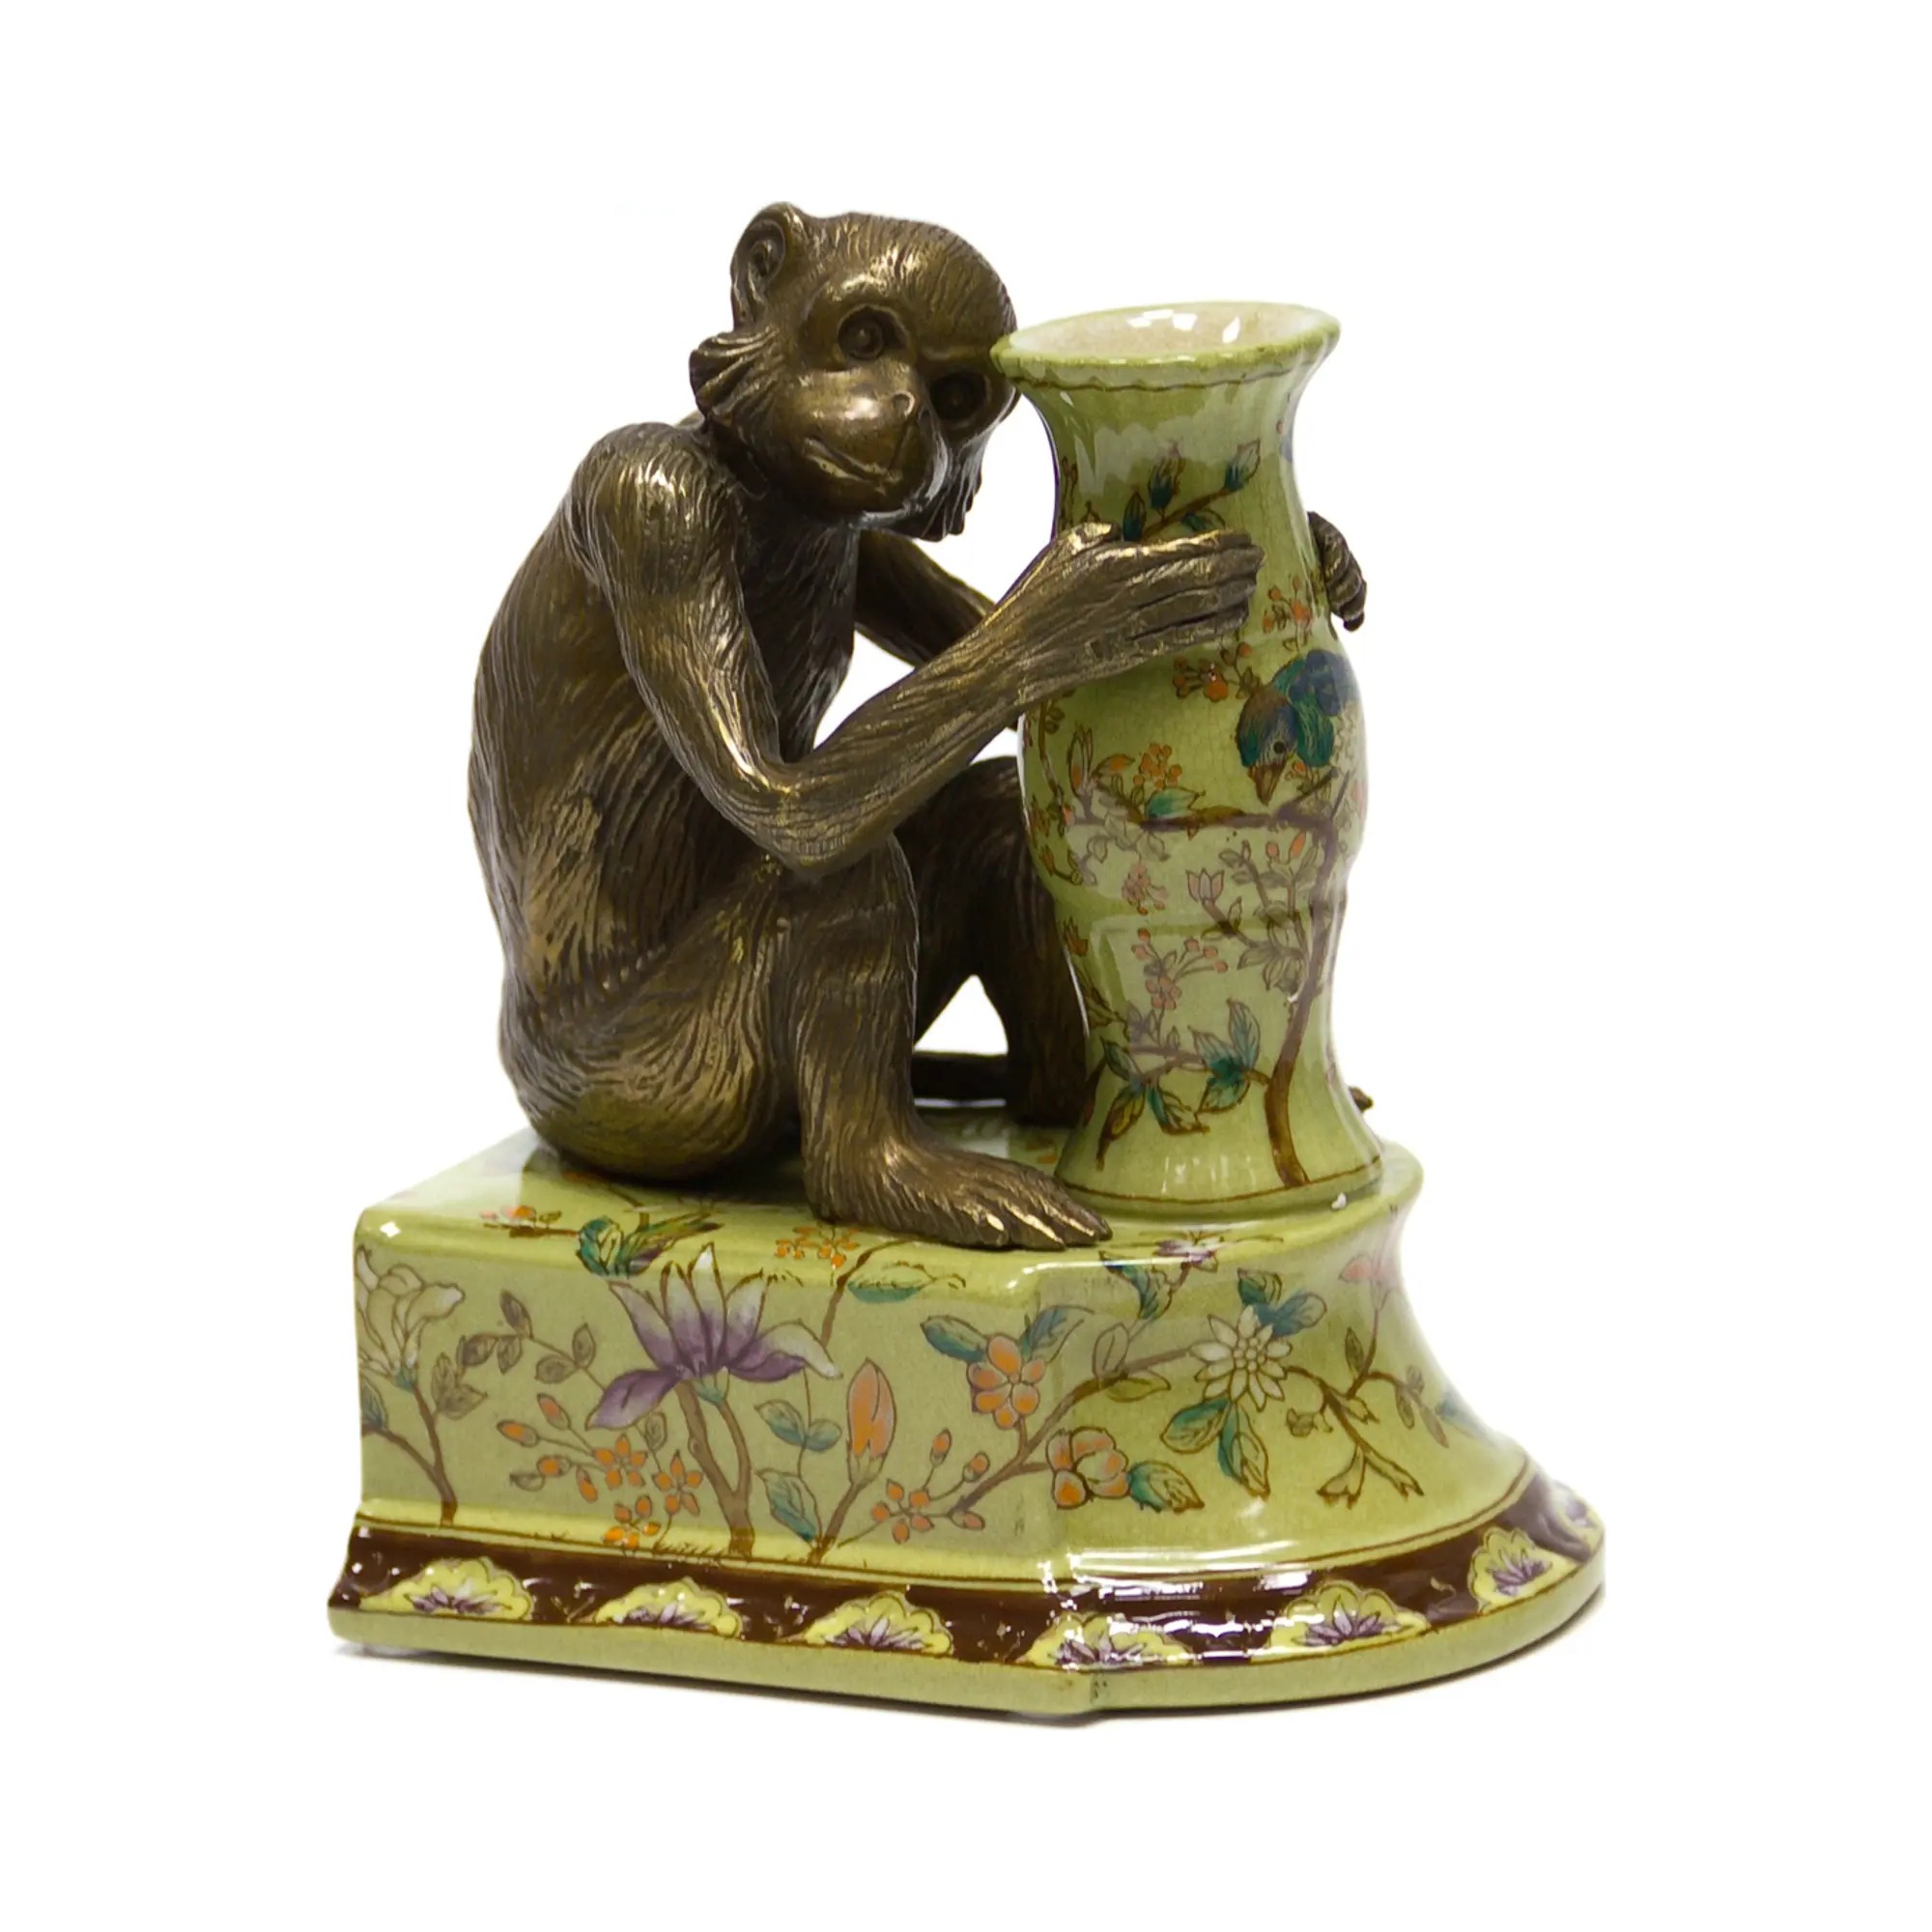 Держатель для книг Wah luen handicraft обезьяна смотрит направо 20 см